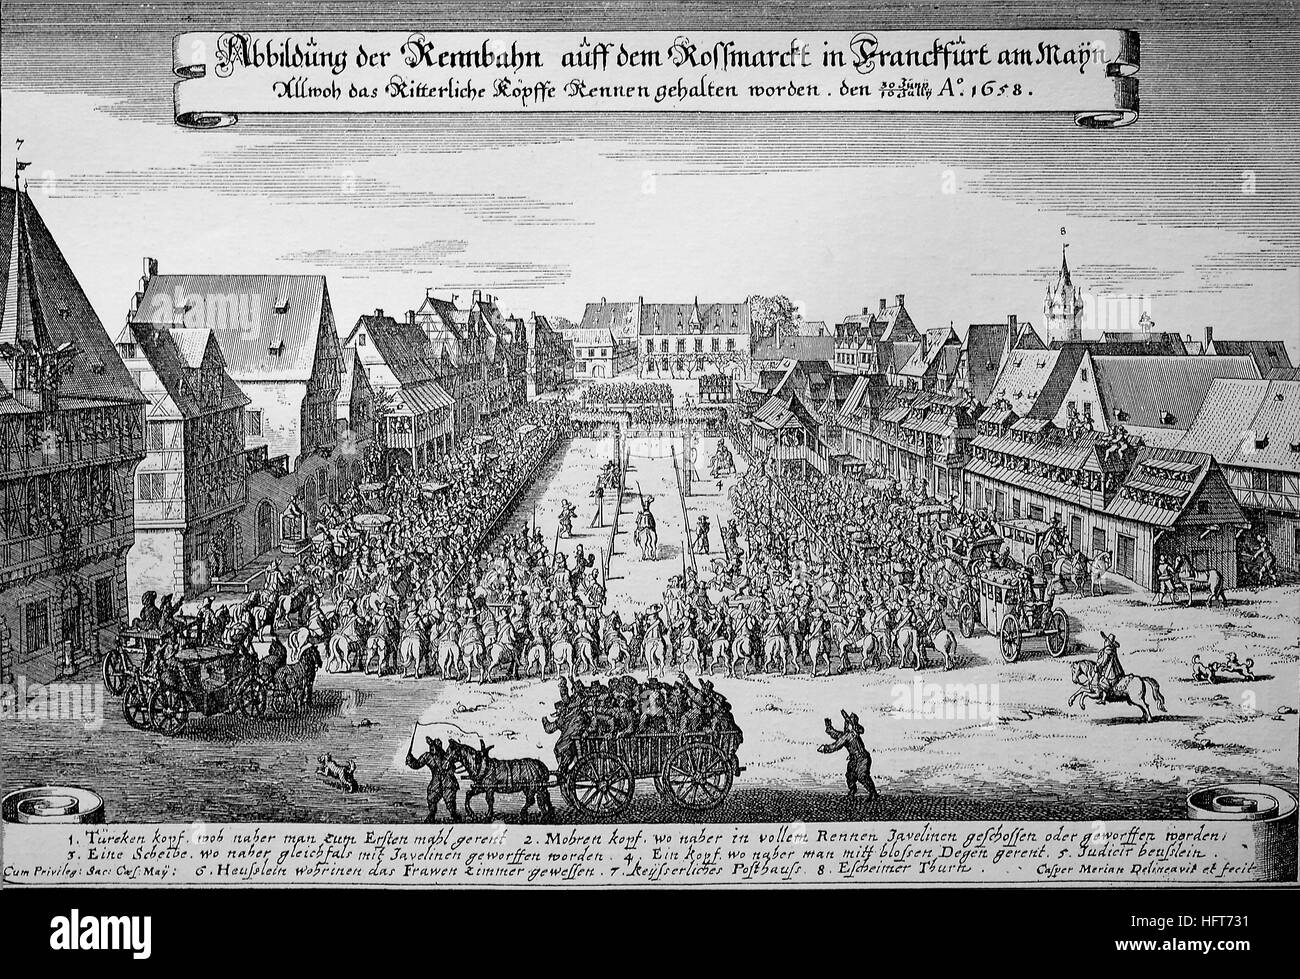 Illustrazione della pista al Rossmarkt in Frankfurt am Main, Ringstechen sul Roßmarkt alla elezione di Leopoldo I 1658, xilografia a partire dall'anno 1885, digitale migliorata Foto Stock